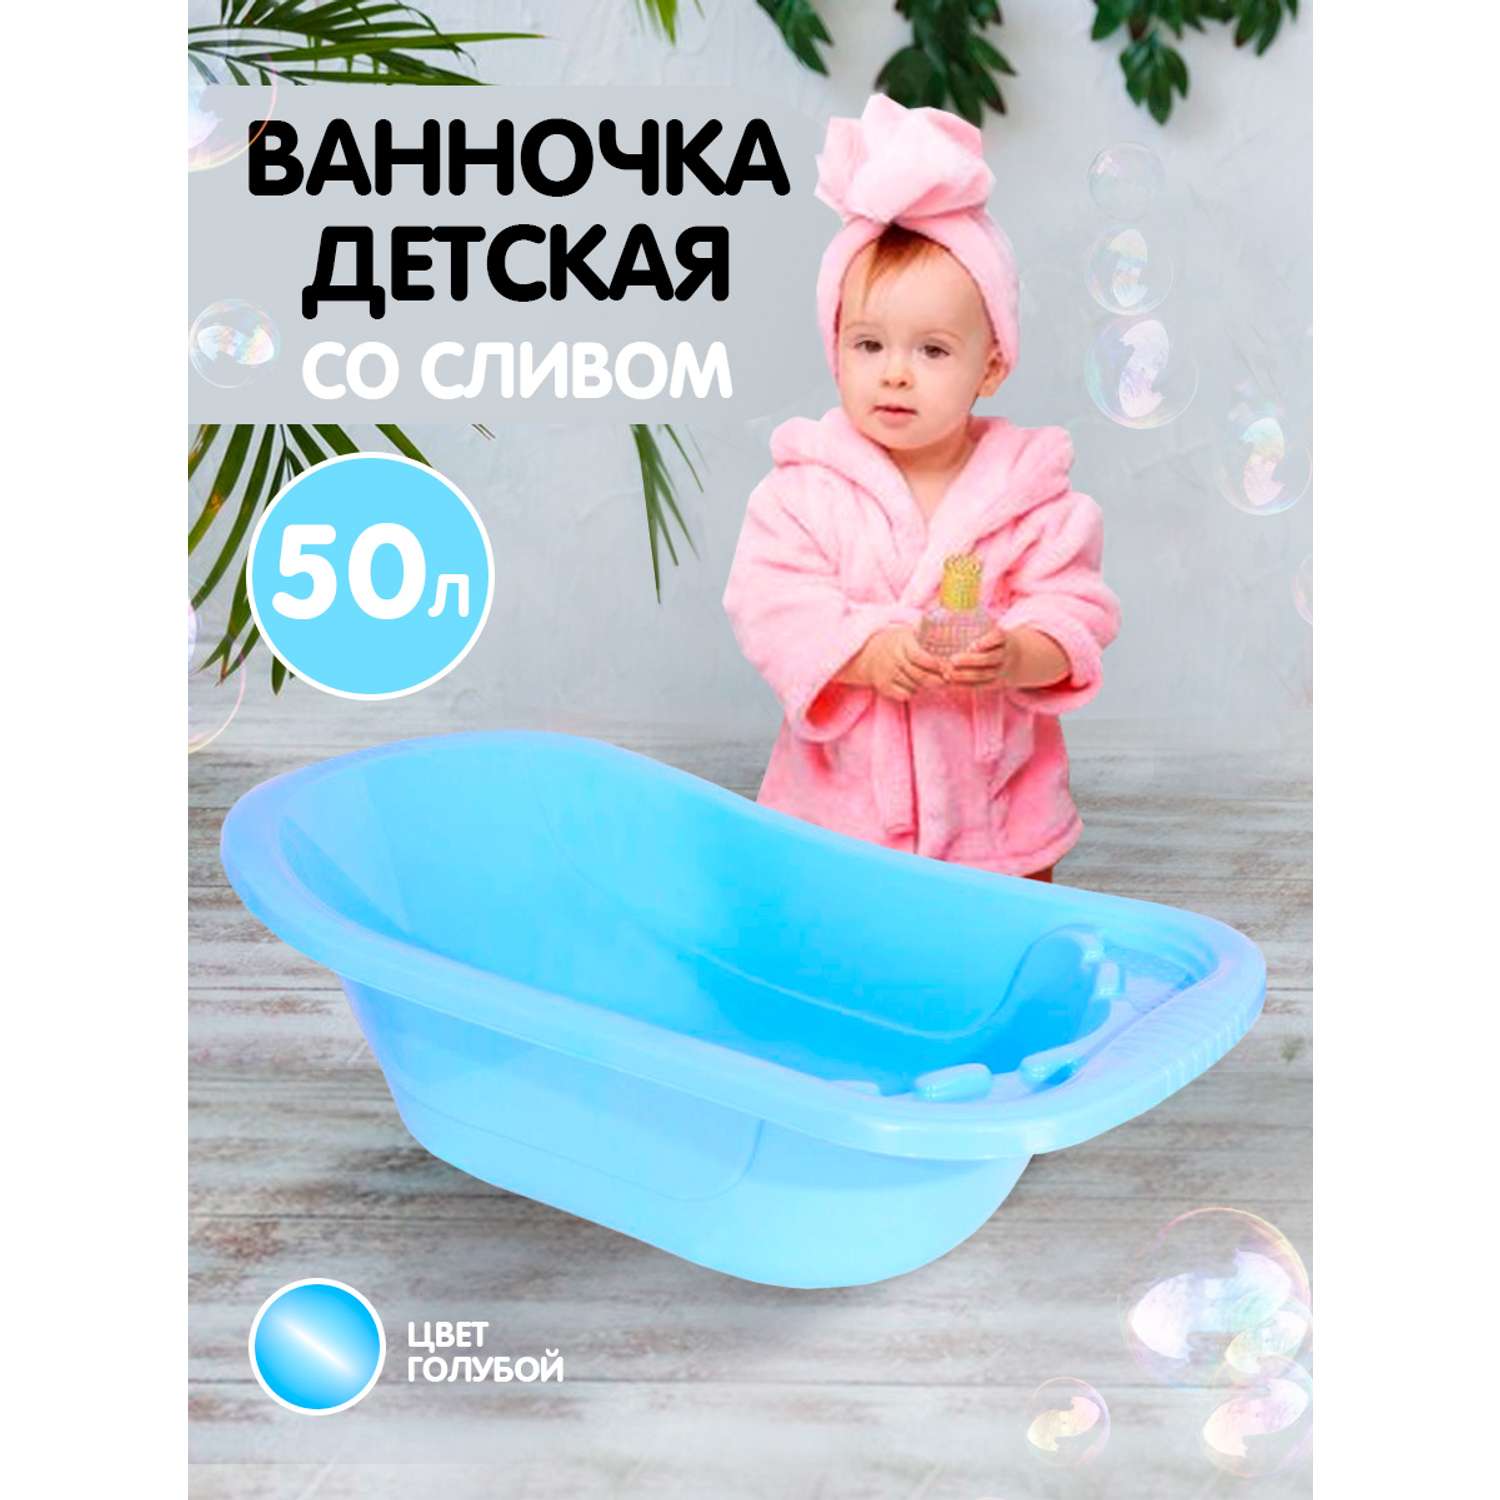 Ванна детская elfplast для купания со сливным клапаном голубая 50 л - фото 1